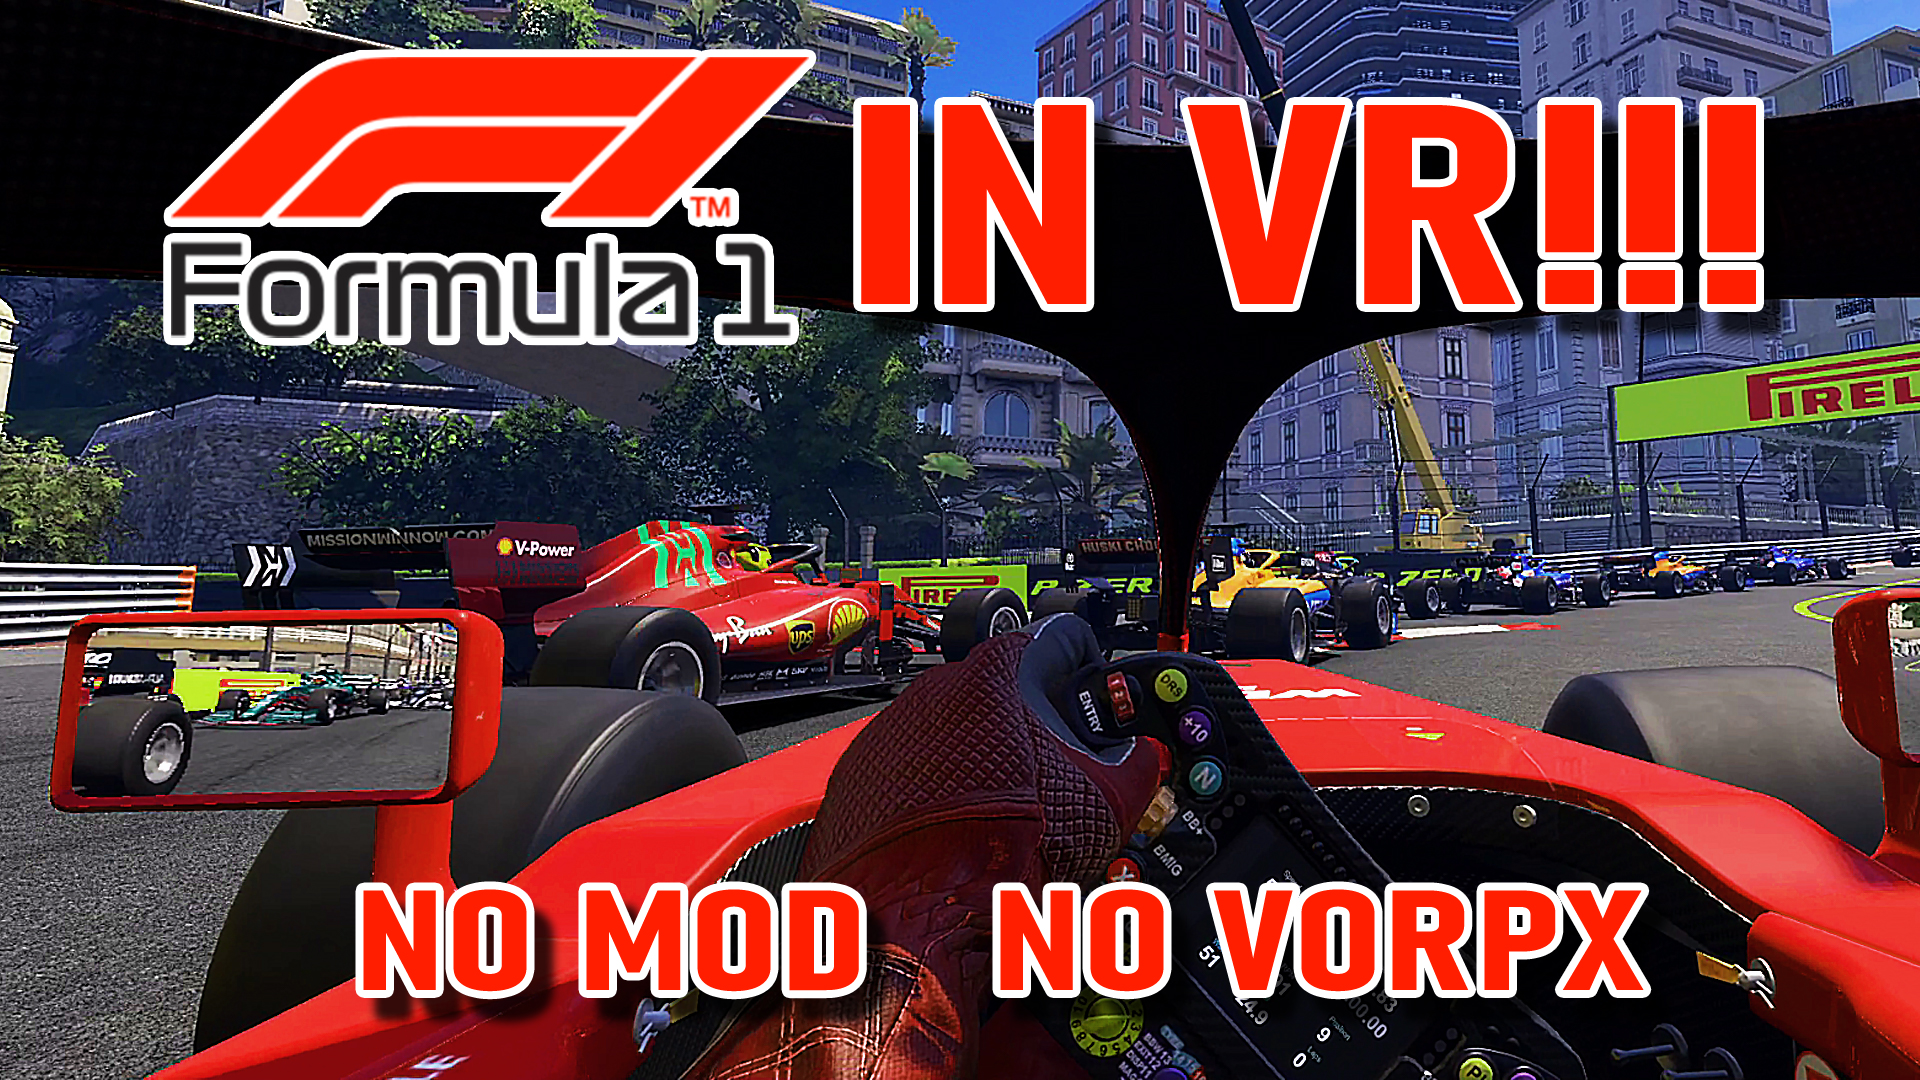 Il campionato di Formula 1 in VR senza mod e senza vorpX